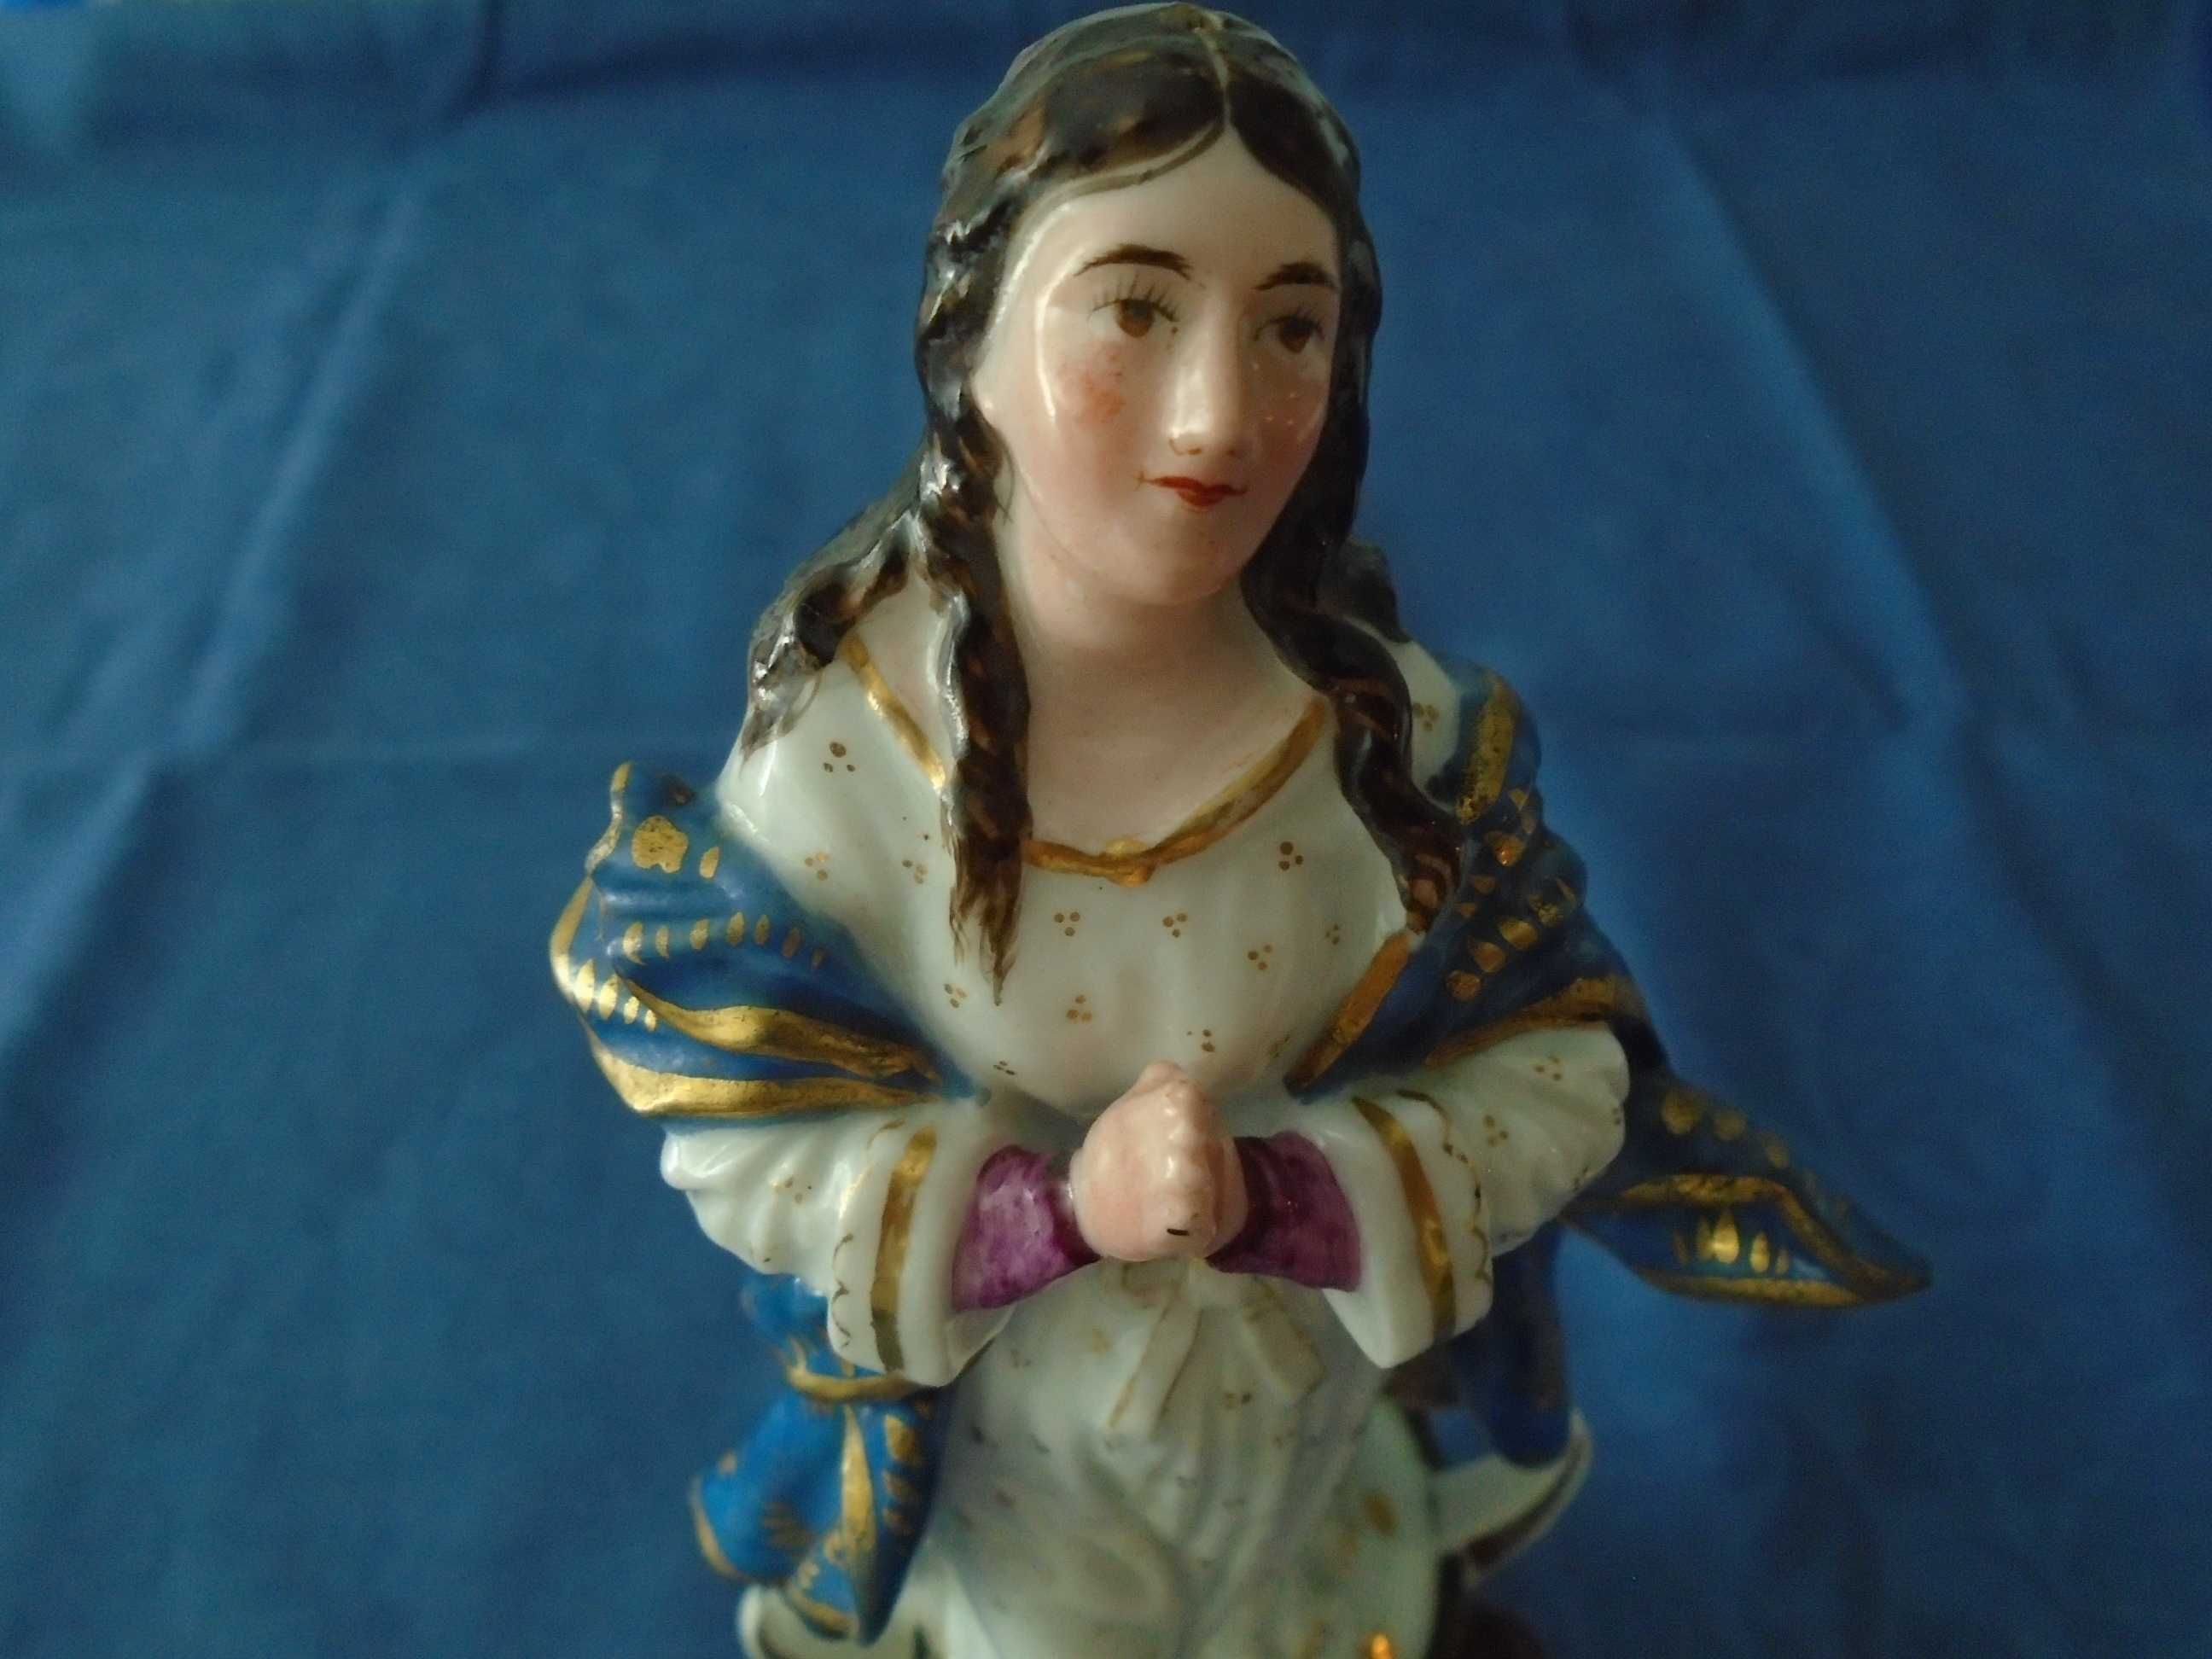 Nossa Senhora da Conceição em porcelana - peça muito antiga